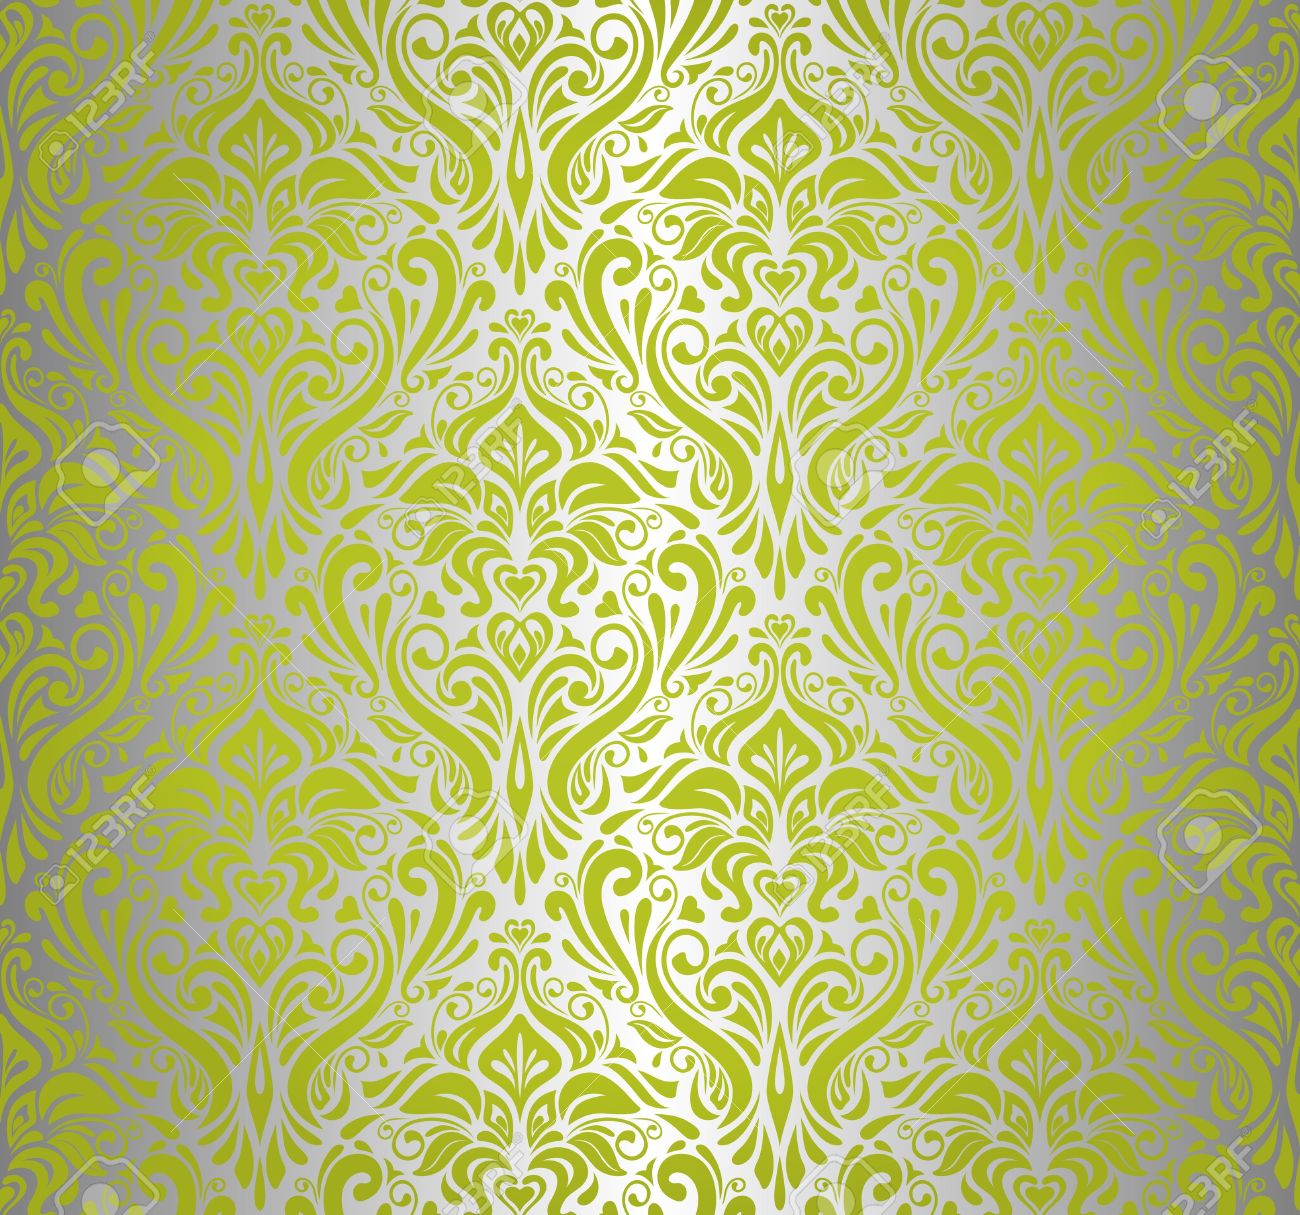 녹색과 은색 벽지,무늬,노랑,초록,벽지,디자인